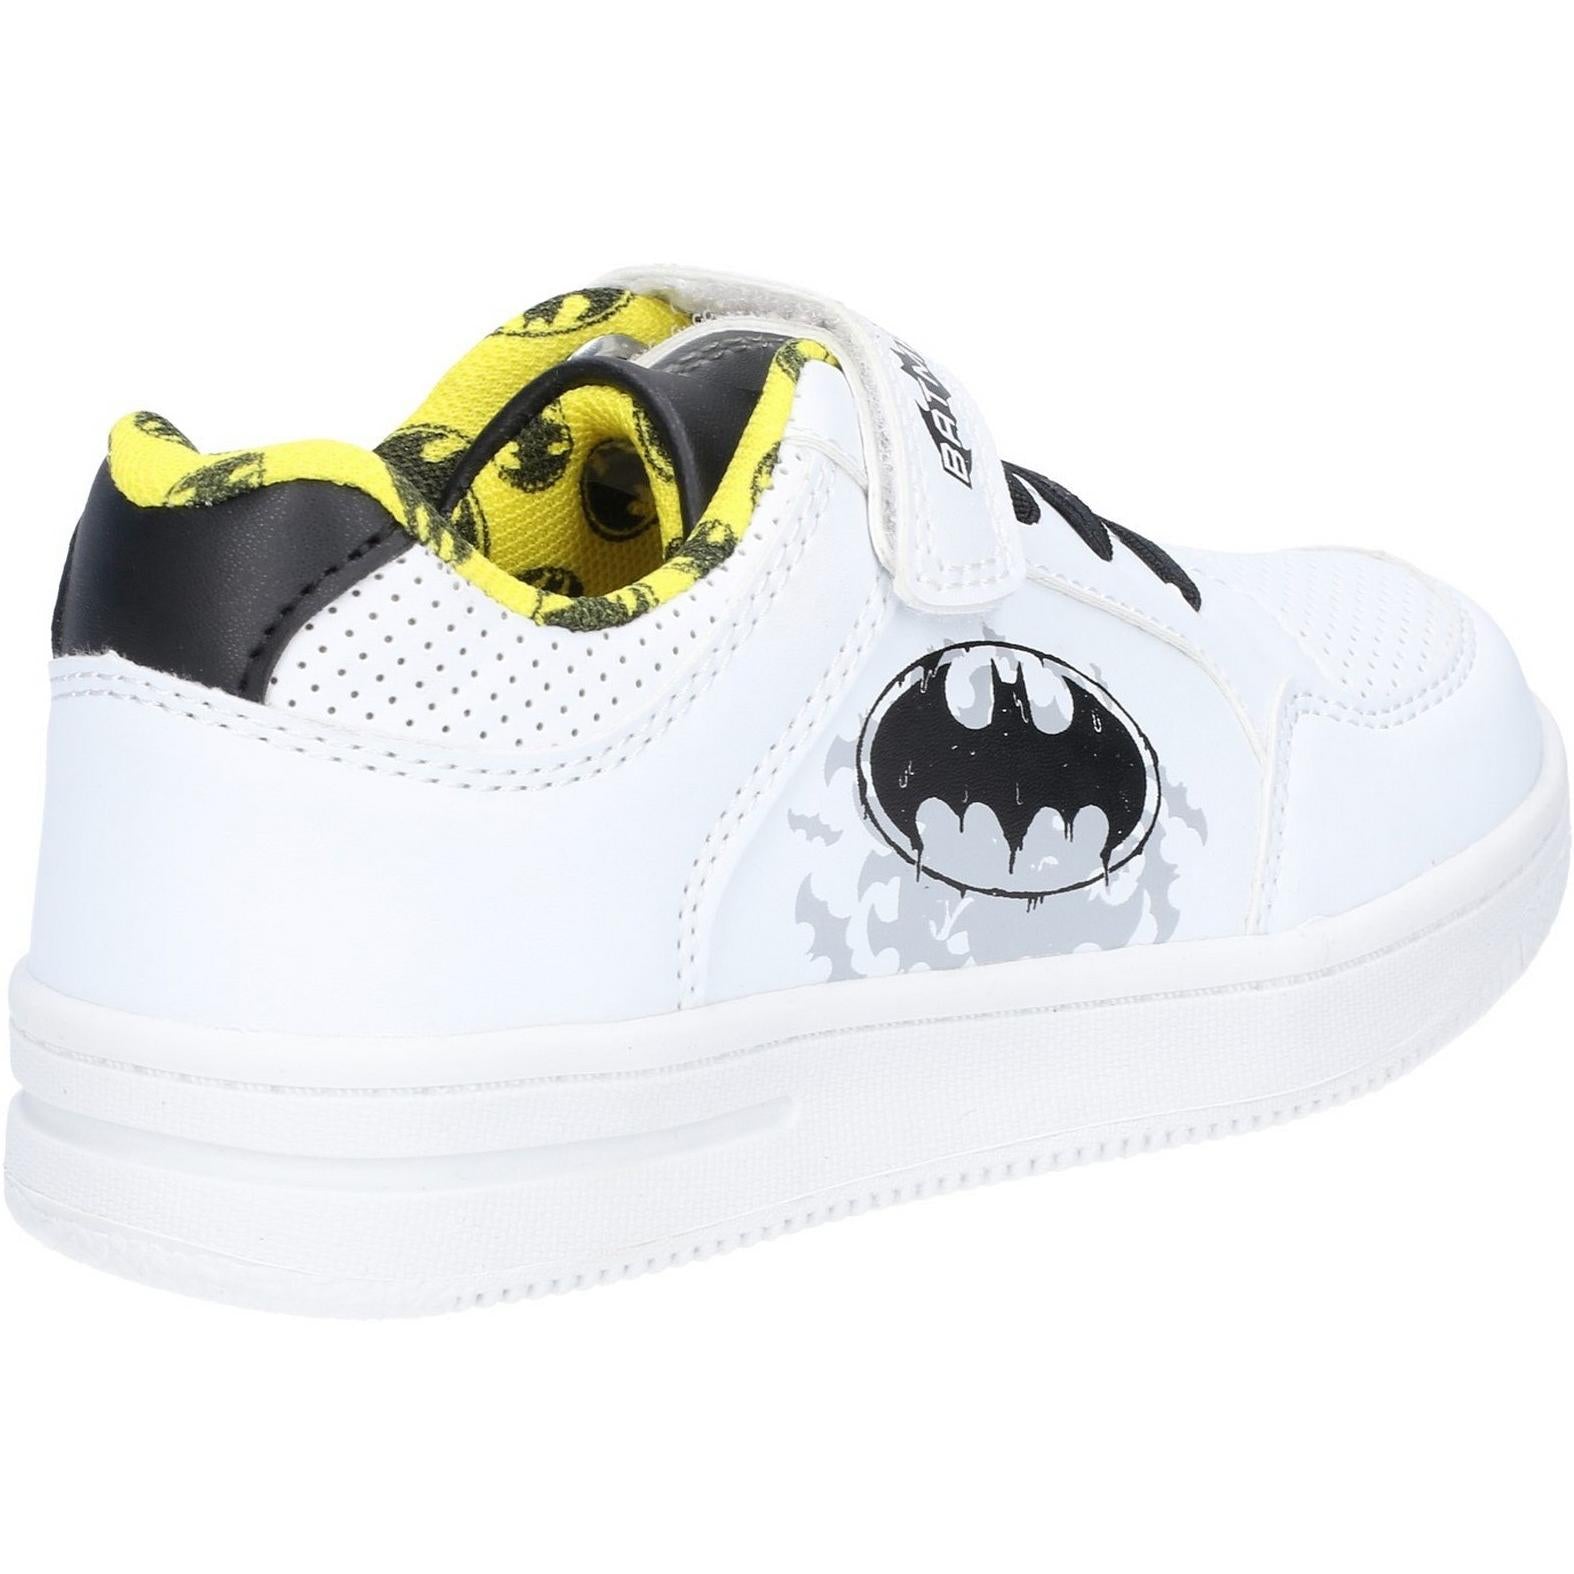 Leomil Batman Low Sneakers touch fastening shoe